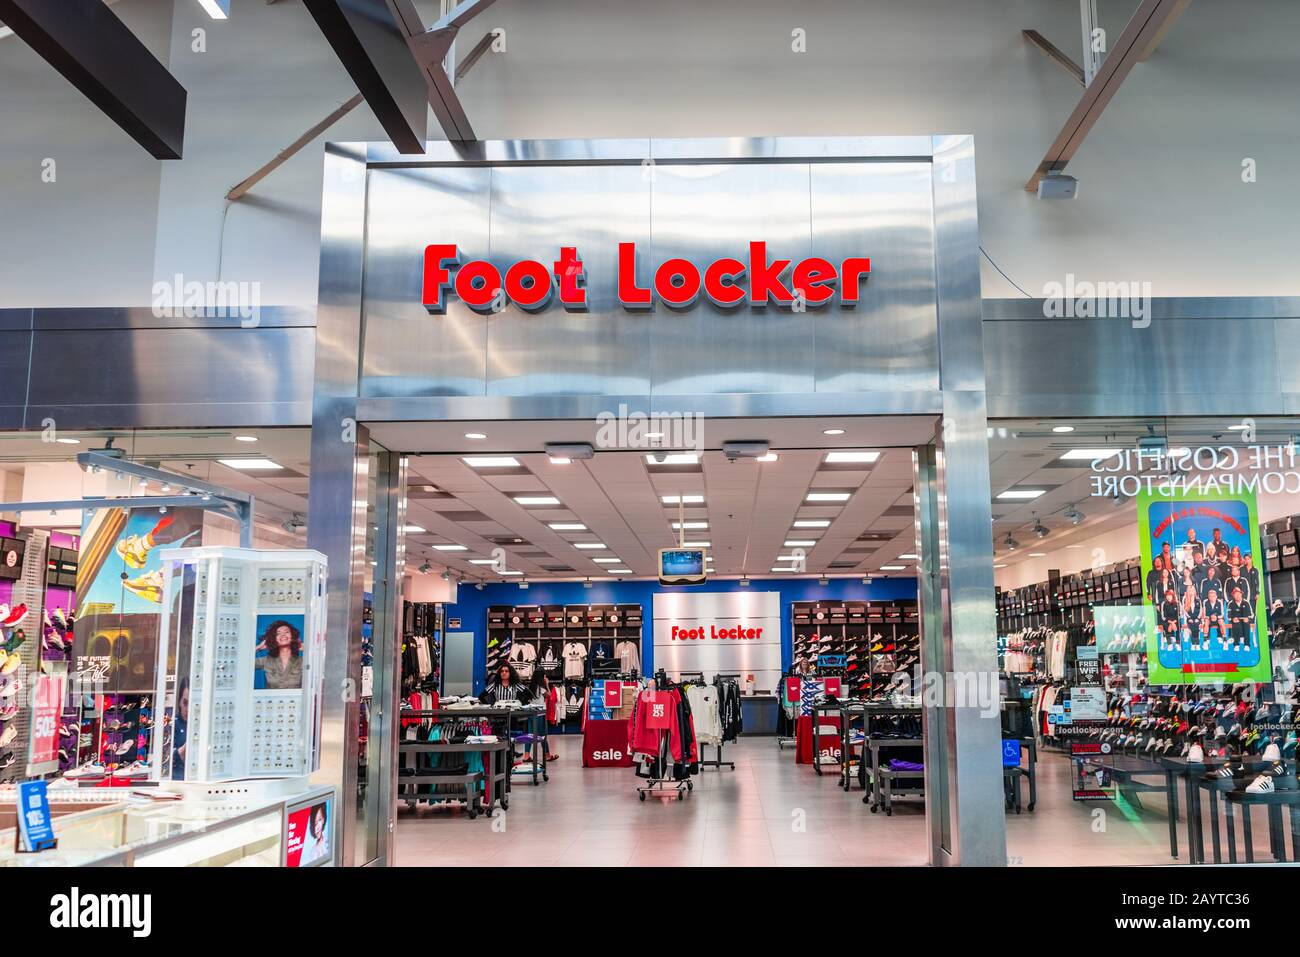 Foot Locker Store Banque d'image et photos - Page 2 - Alamy